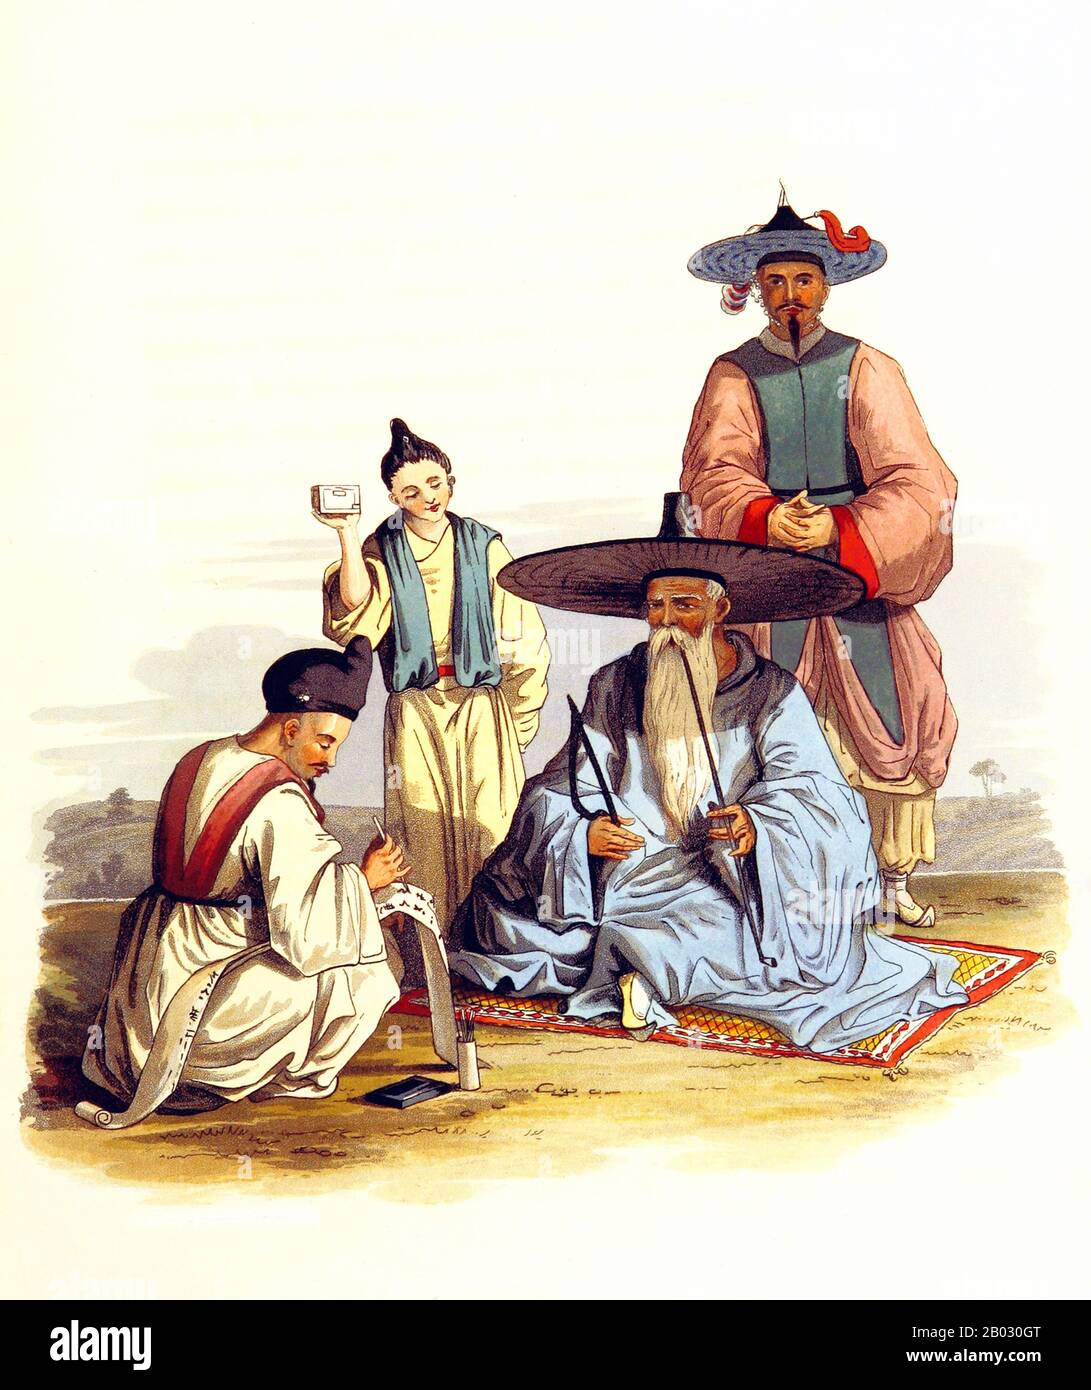 Joseon fu un regno coreano fondato da Yi Seonggye che durò per circa cinque secoli, dal luglio 1392 all'ottobre 1897. Fu ufficialmente rinominato Impero Coreano nell'ottobre 1897. Fu fondata dopo il rovesciamento di Goryeo in quella che oggi è la città di Kaesong. I confini più settentrionali del regno furono estesi ai confini naturali dei fiumi Yalu e Tumen attraverso la sottomissione dei Jurchens. Joseon fu l'ultima dinastia di Corea e la sua più lunga dinastia confuciana. Foto Stock